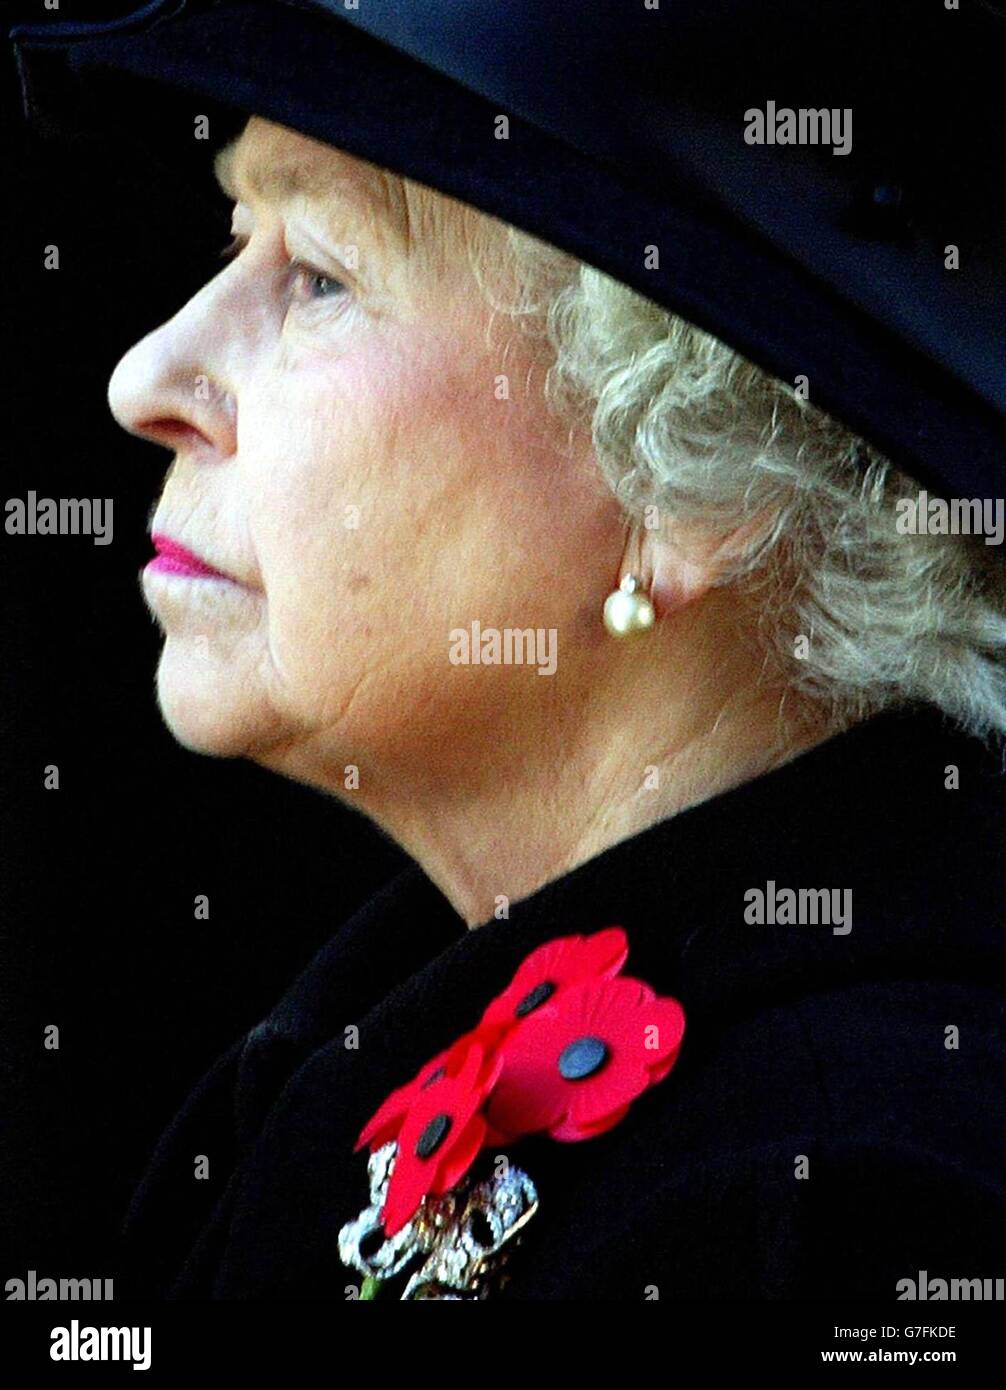 Queen Elizabeth ricordo domenica Foto Stock